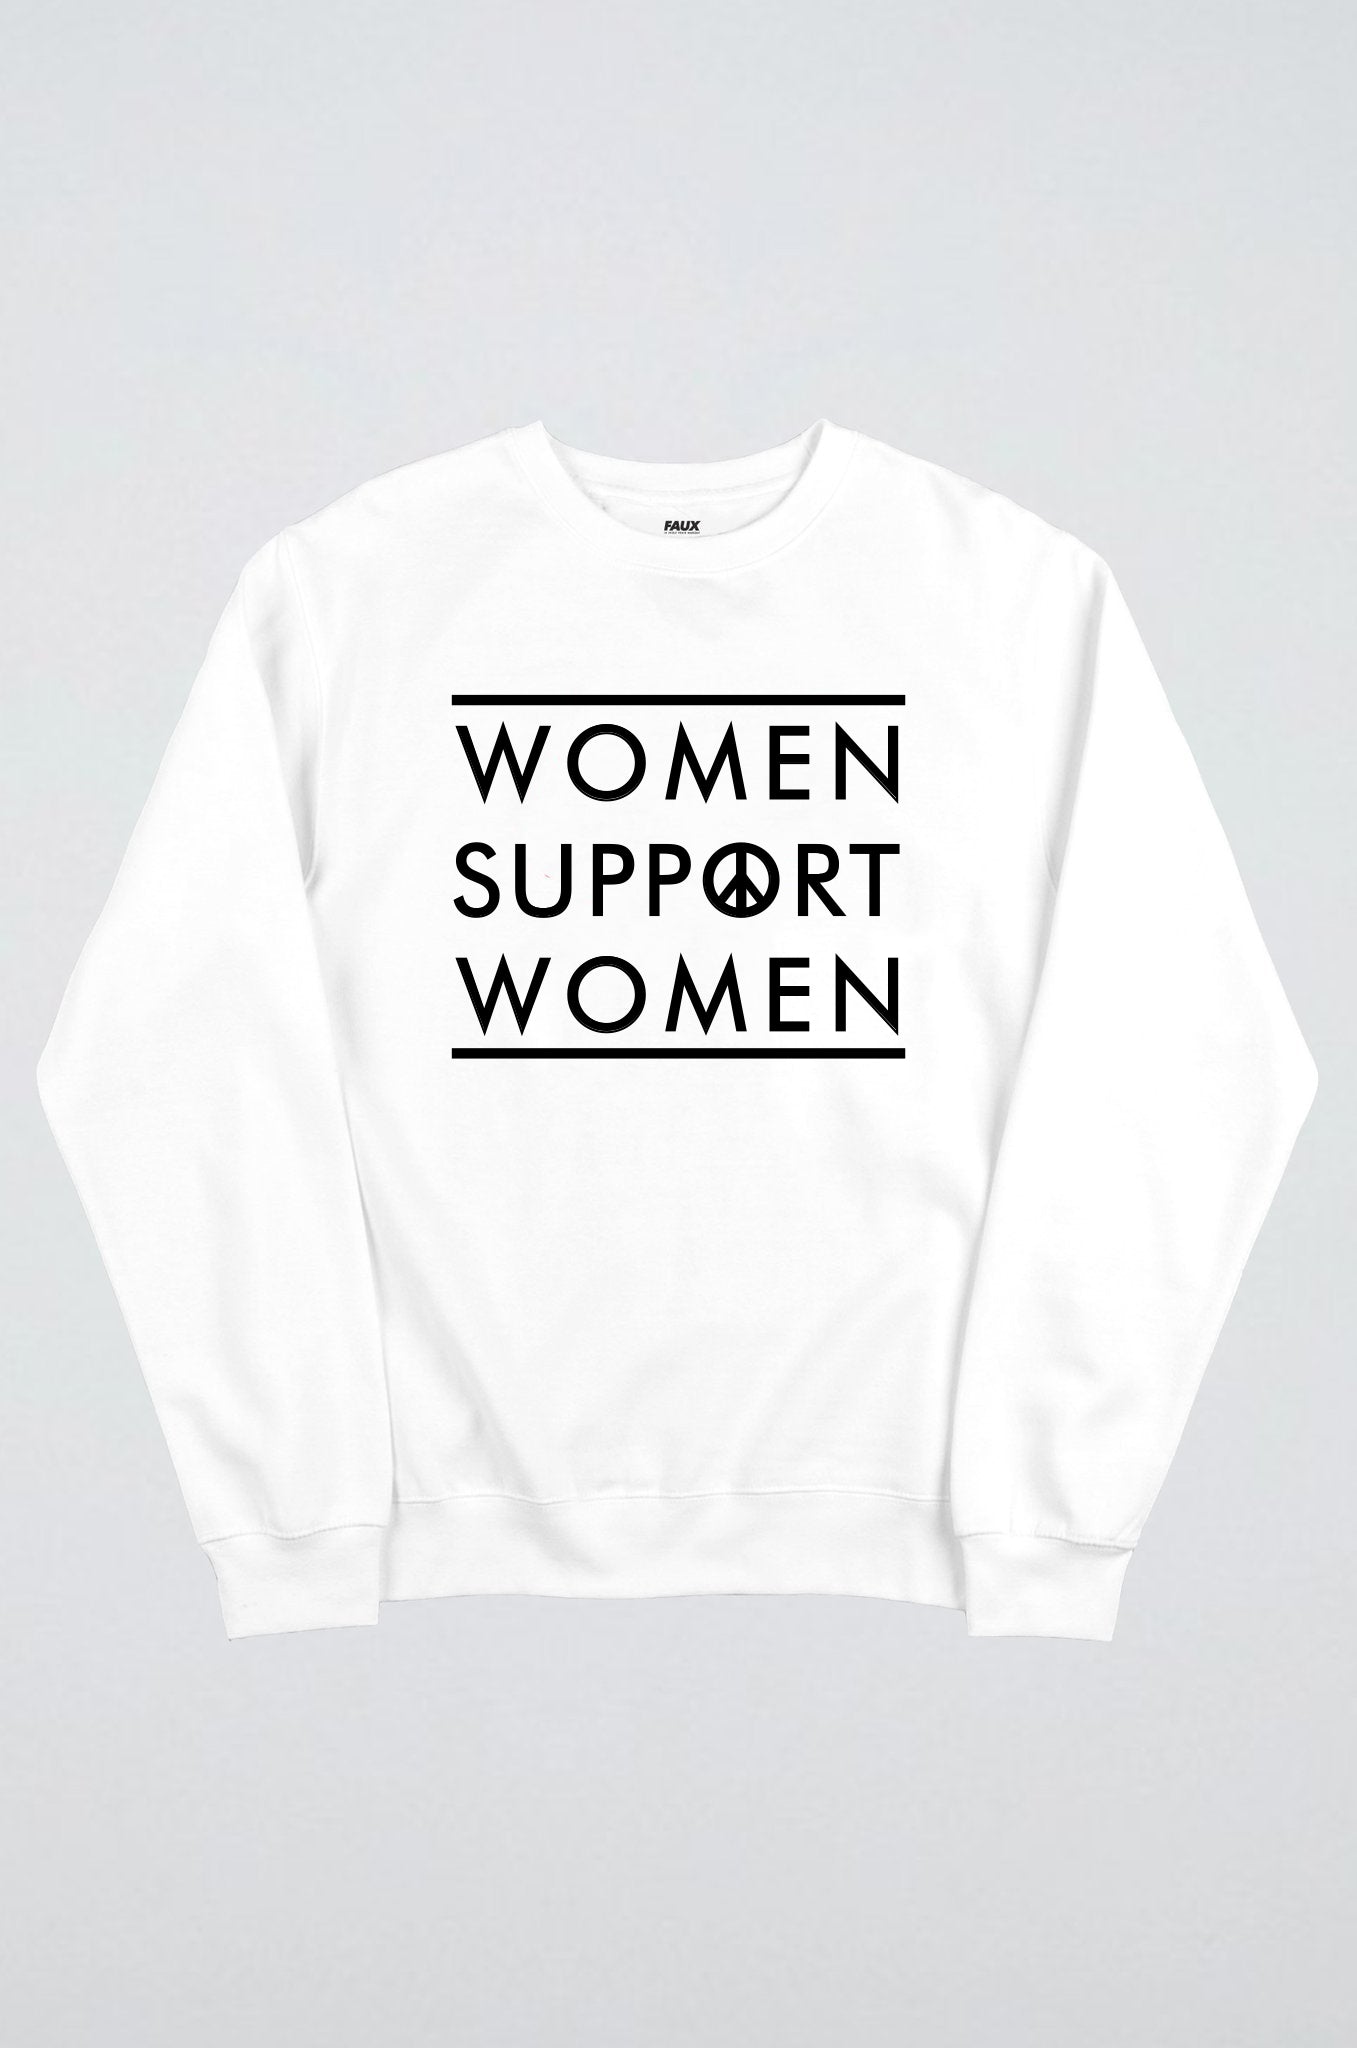 Women support women